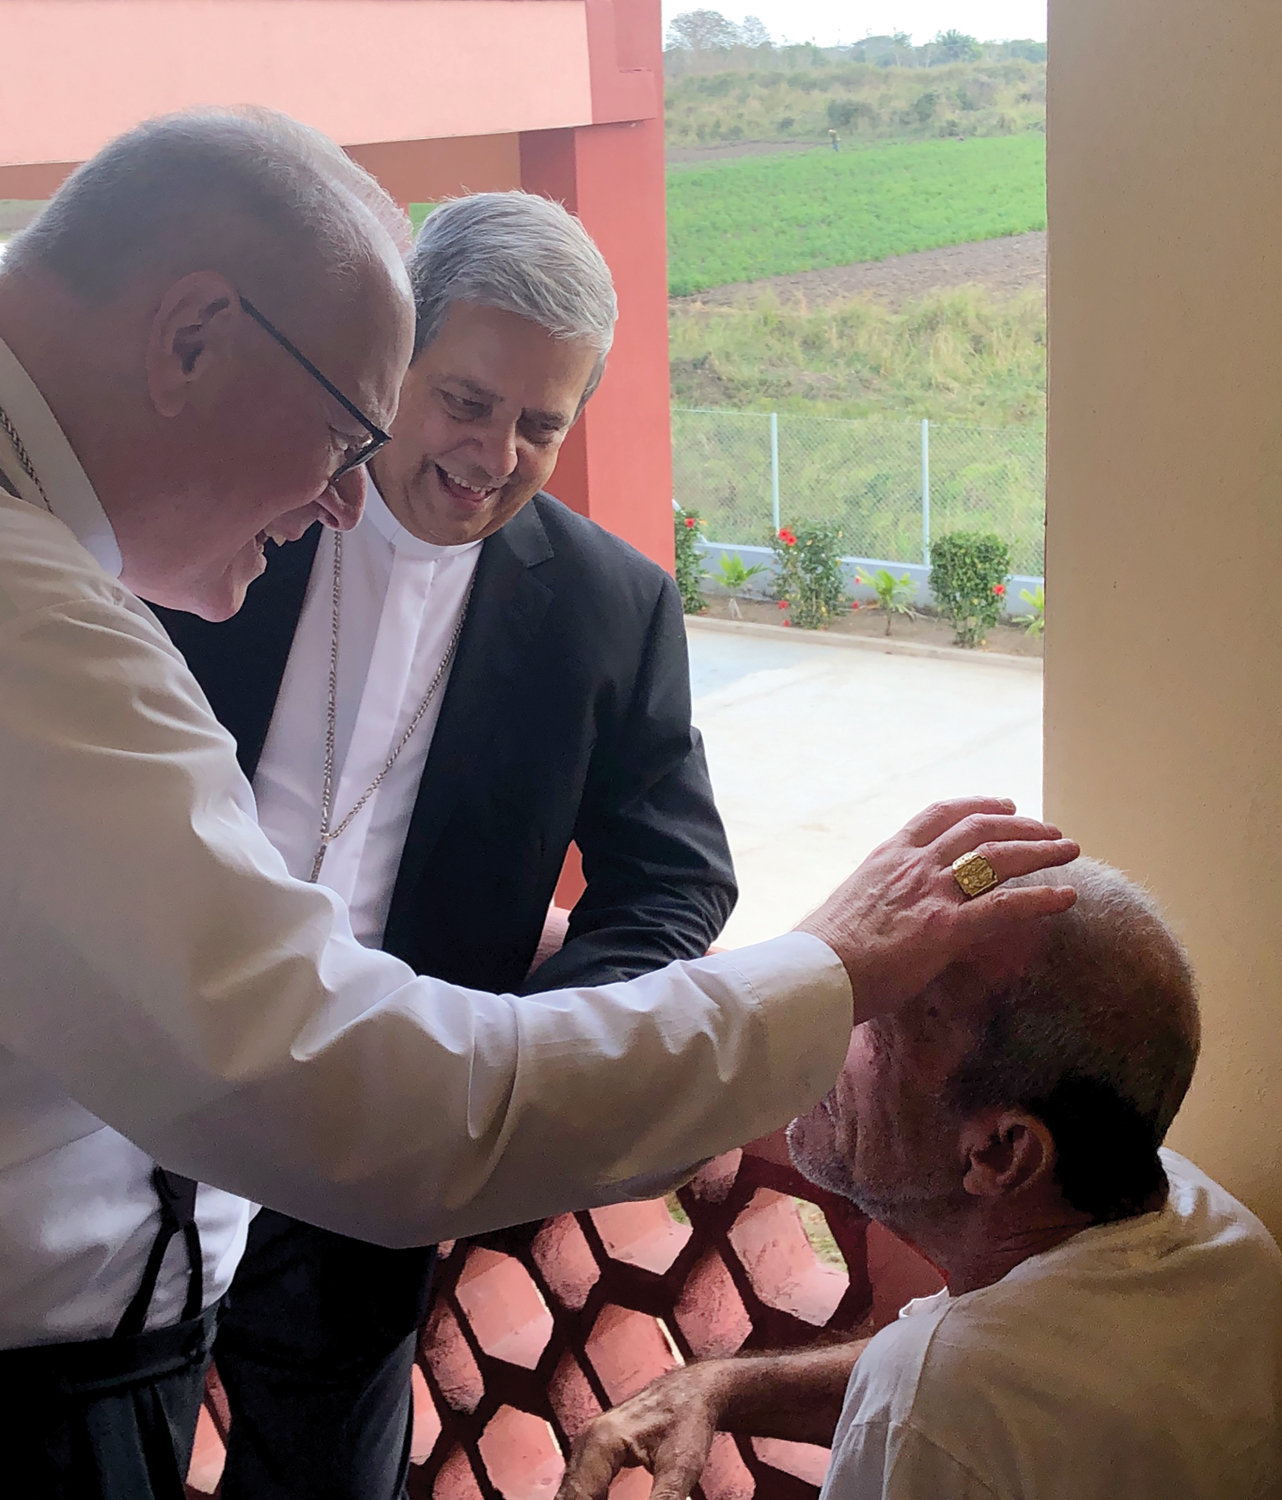 BENDICIÓN EN CUBA—El cardenal Dolan, acompañado por el arzobispo Wilfredo Pino Estévez de Cuba, traza la señal de la cruz en la frente de un hombre que vive en un hogar para ancianos en Camaguey, Cuba.